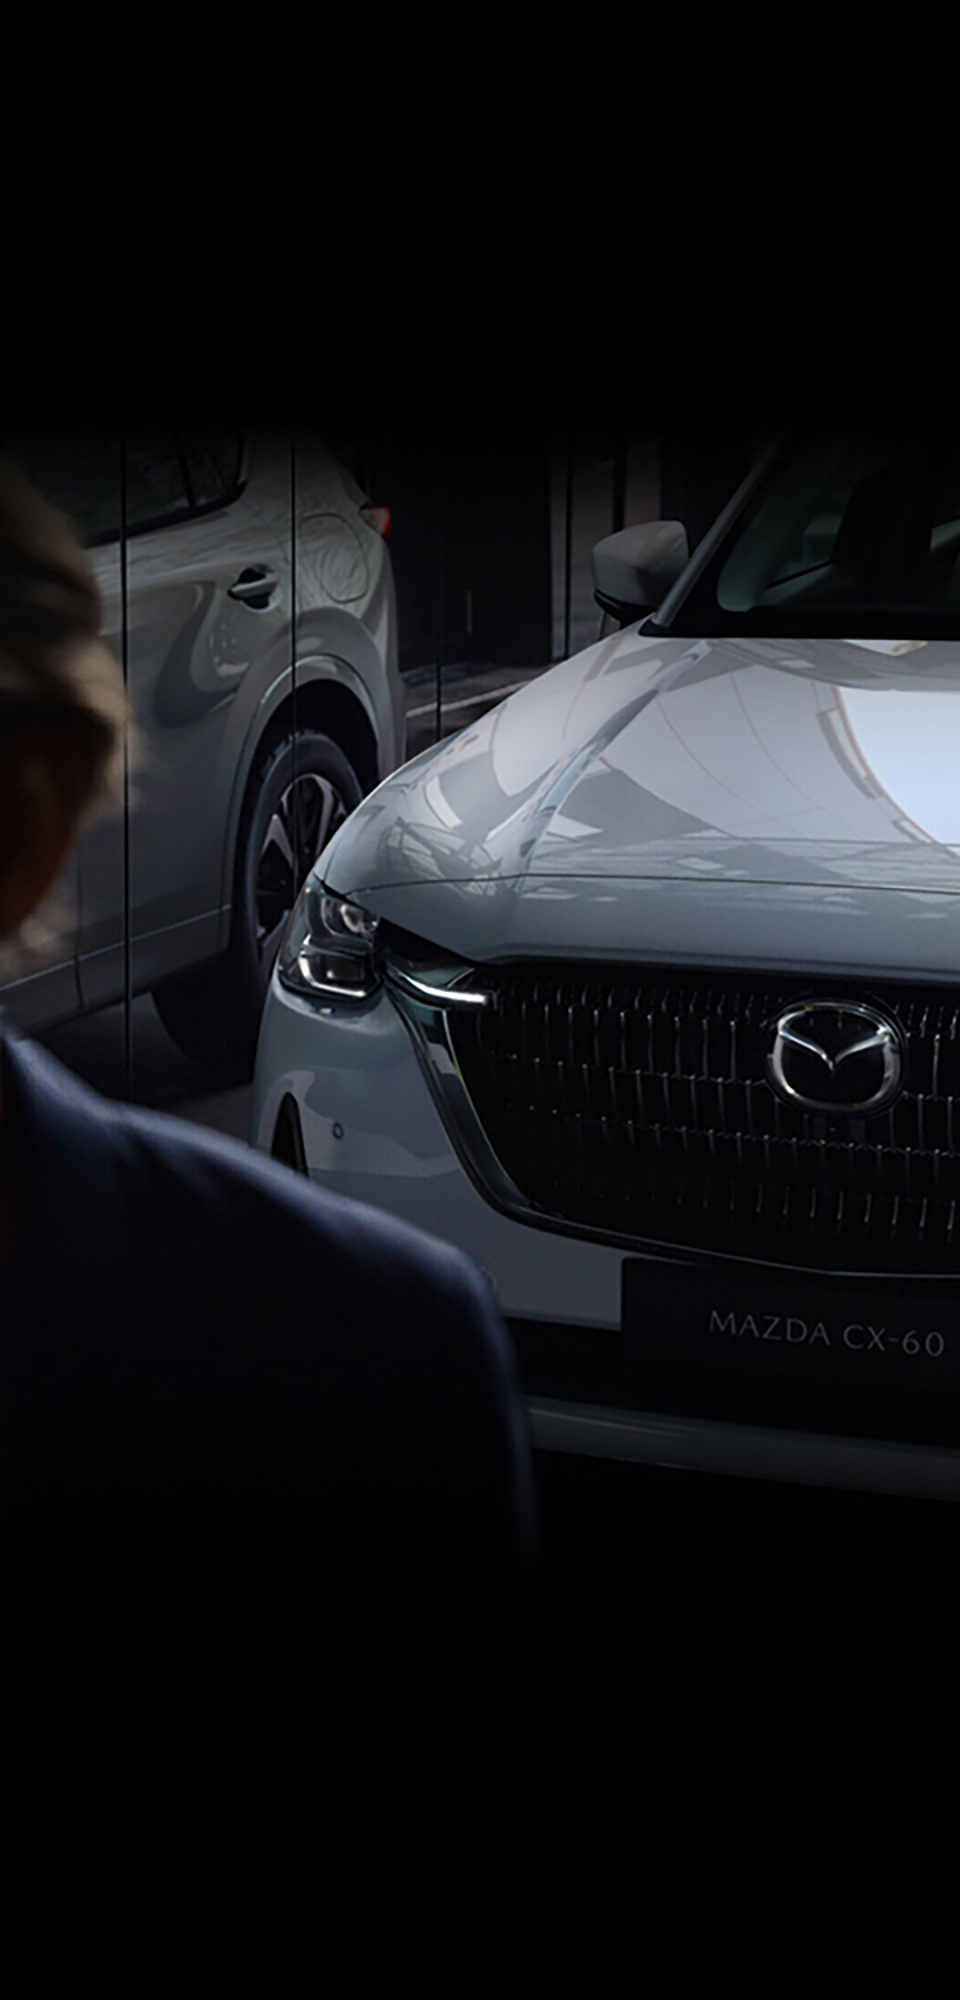 Potpuno nova Mazda CX-60, plug-in hibridni SUV, prikazan s prednje strane reflektirano u staklenom prozoru